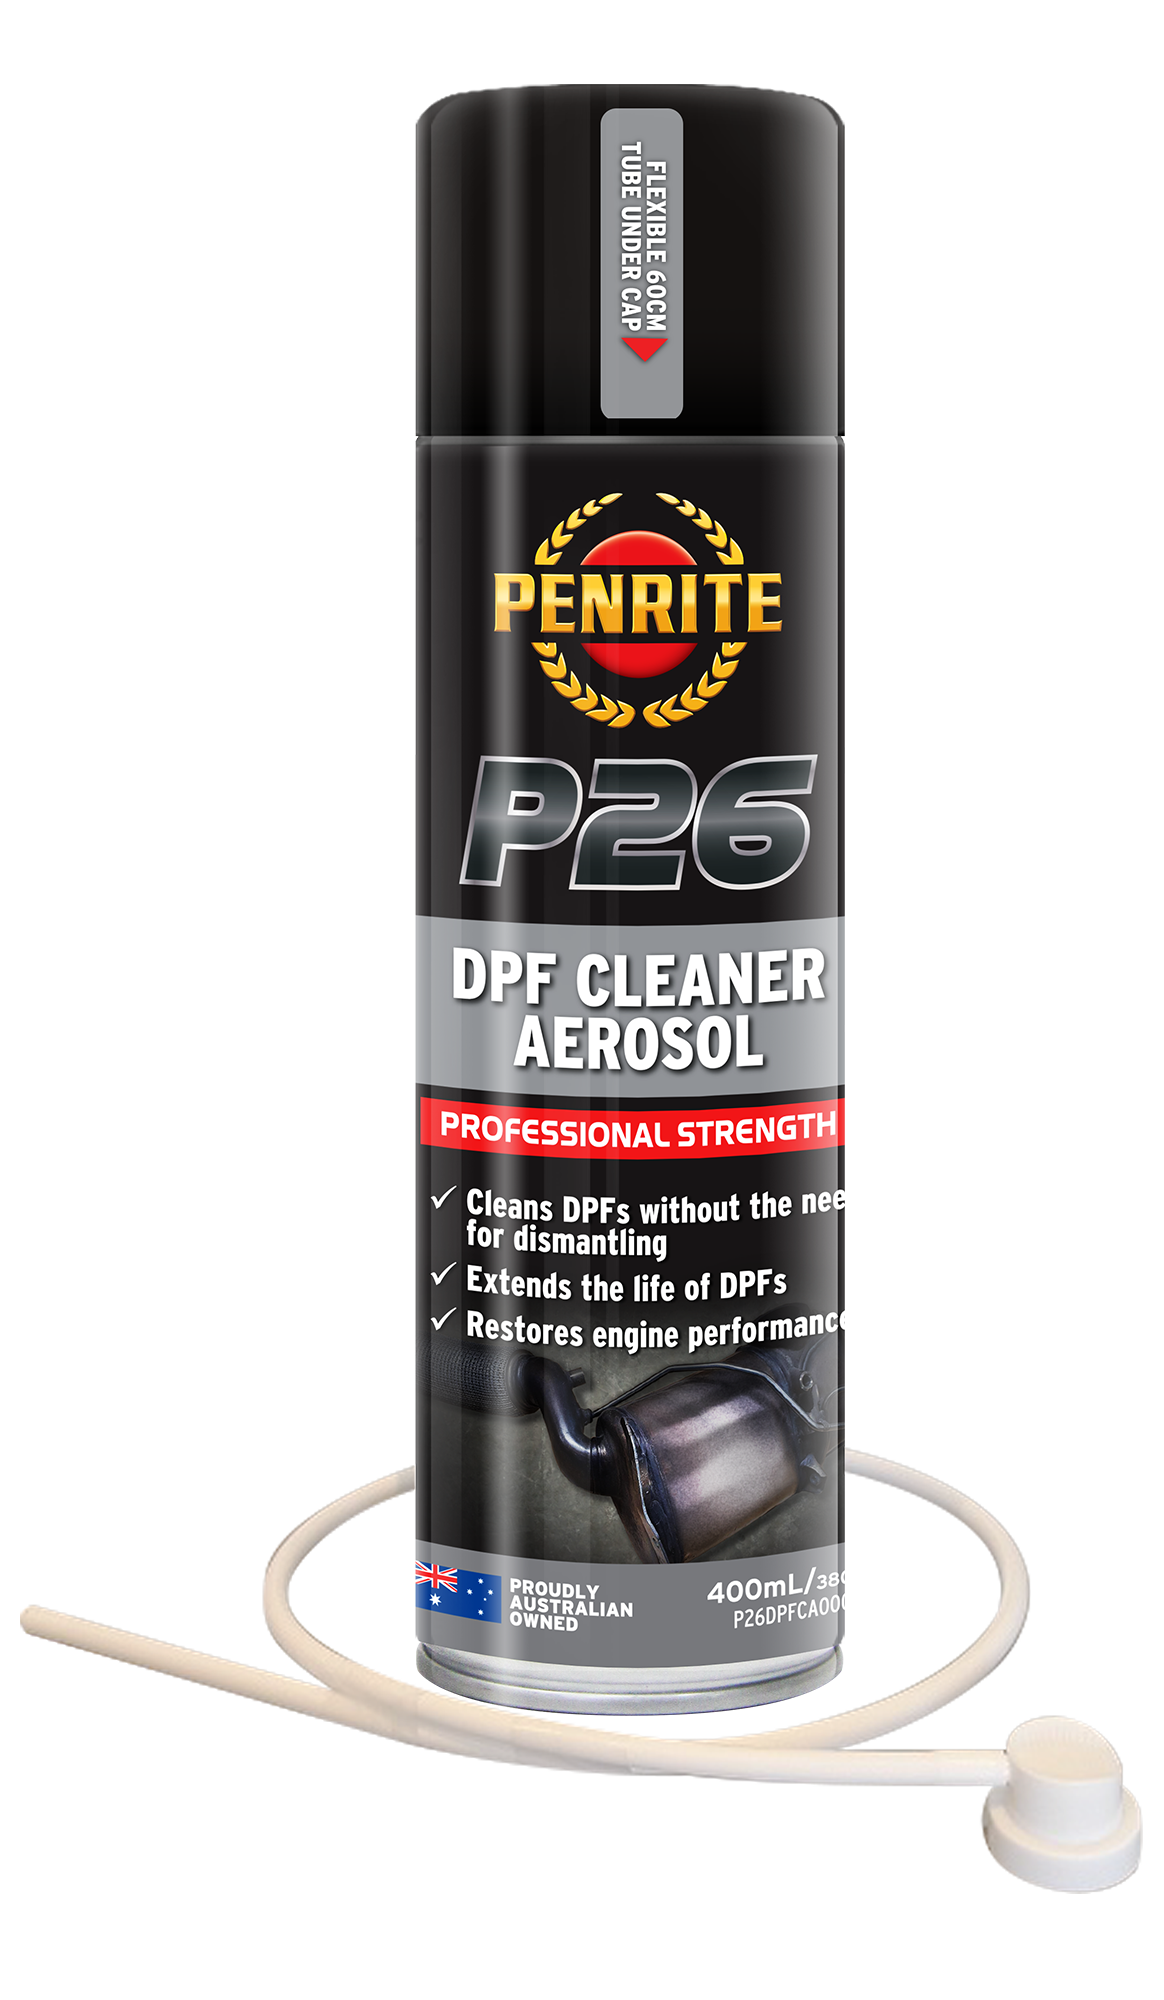 P26 DPF Cleaner Aerosol 400mL - Penrite – Universal Auto Spares